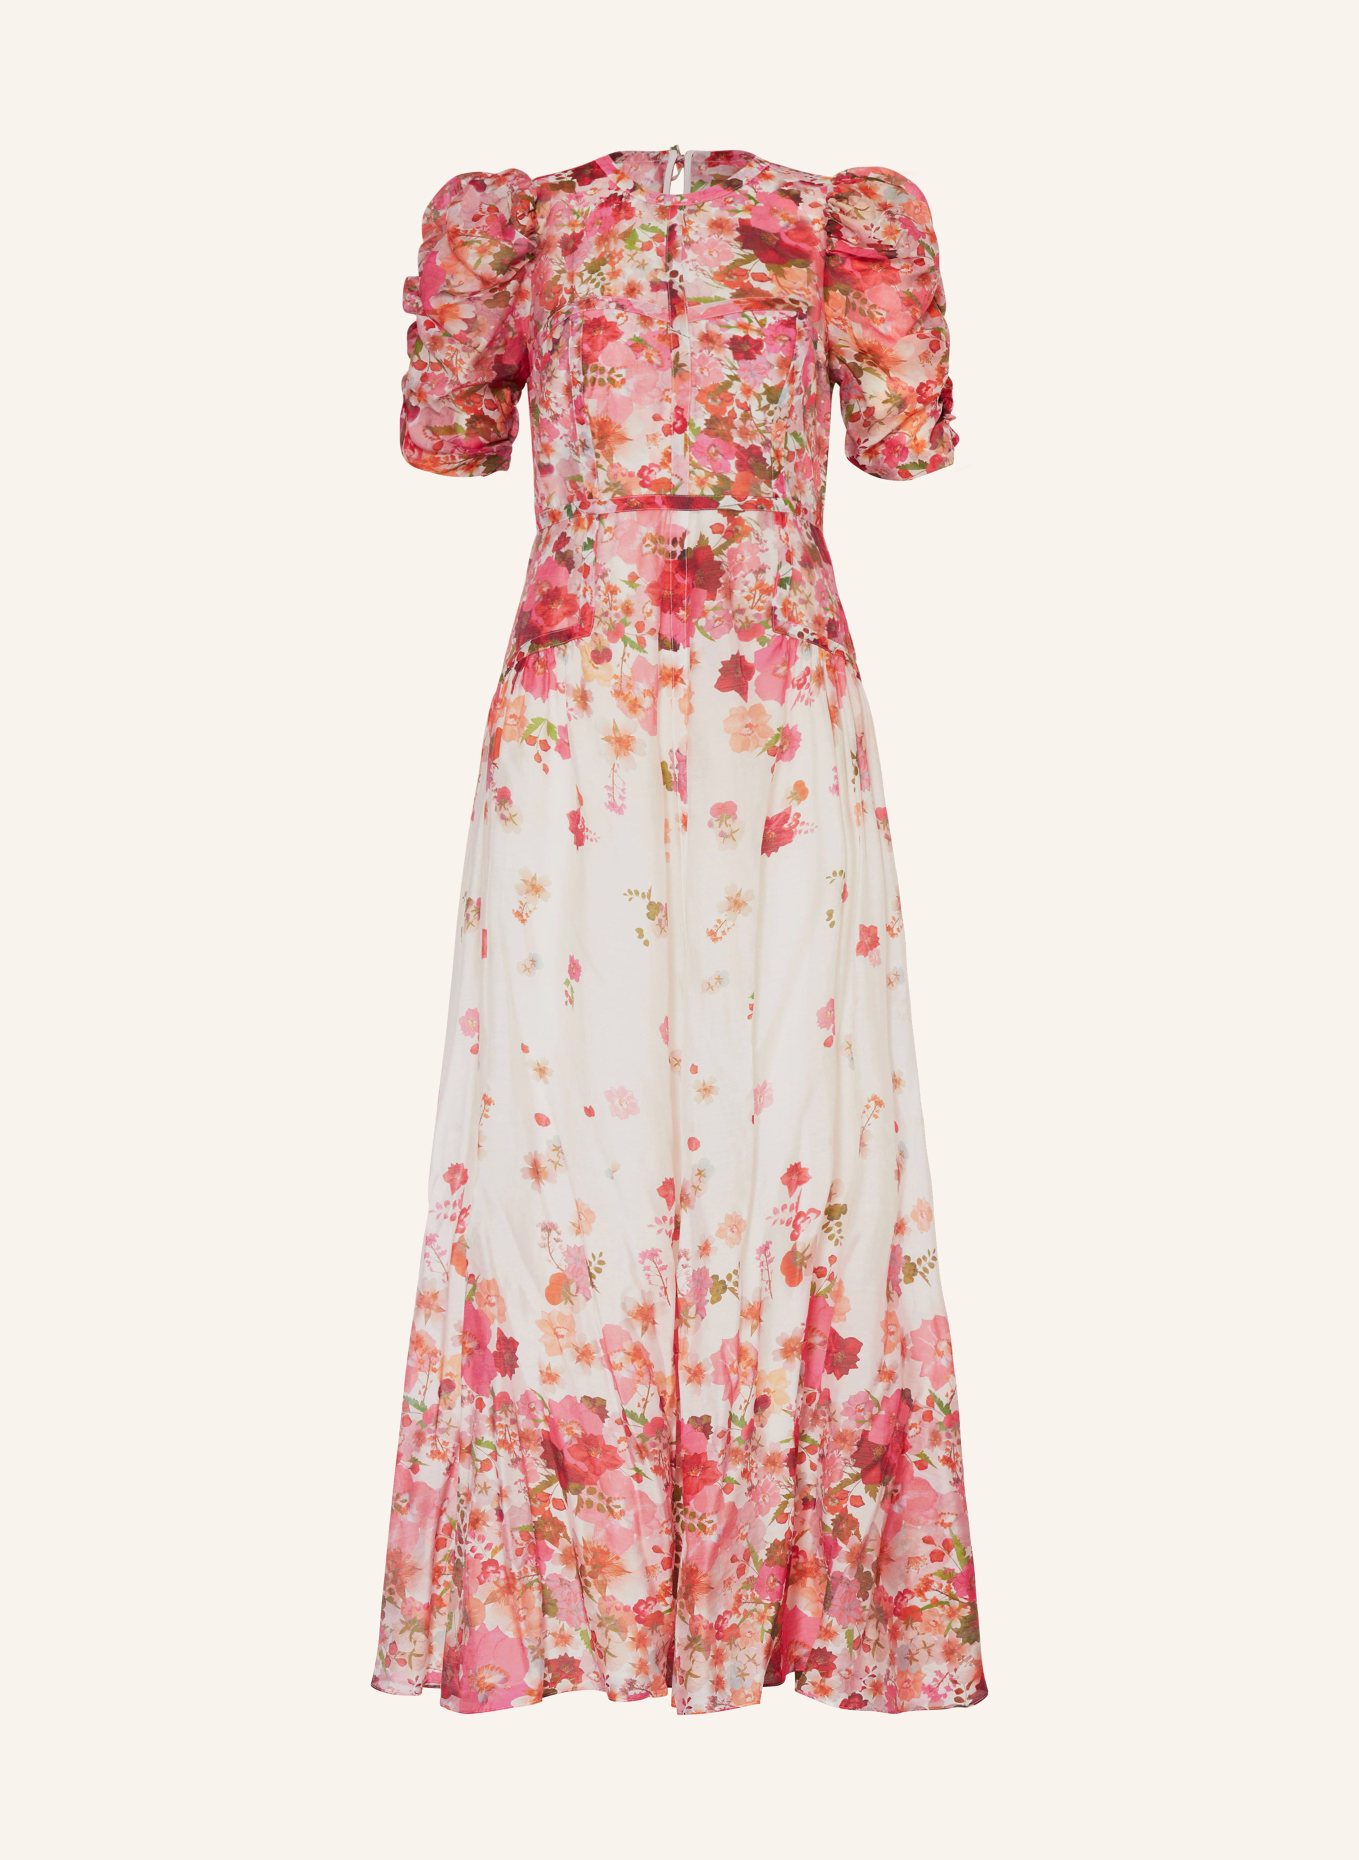 TED BAKER Kleid ALVIANO mit Rüschen, Farbe: PINK/ ROSA/ GRÜN (Bild 1)